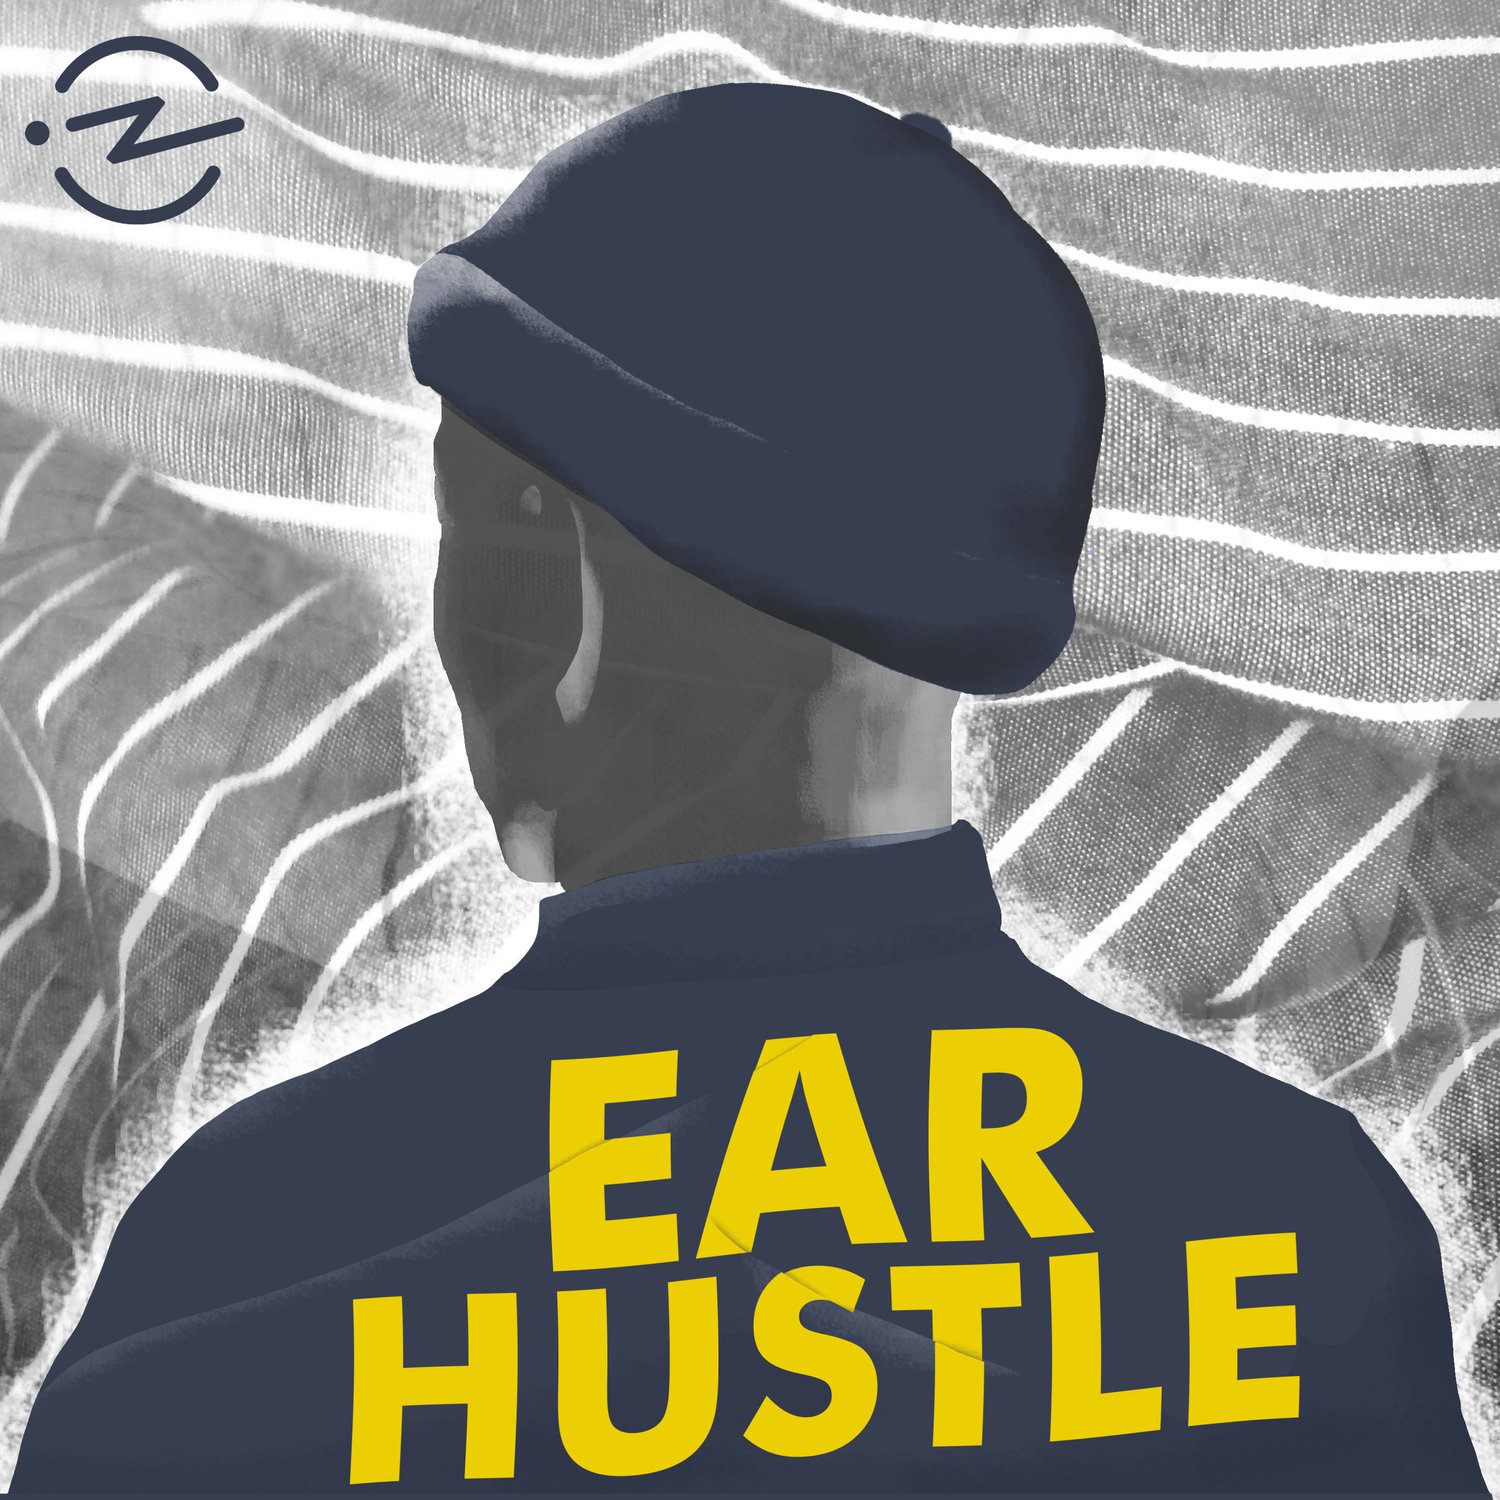 www.earhustlesq.com